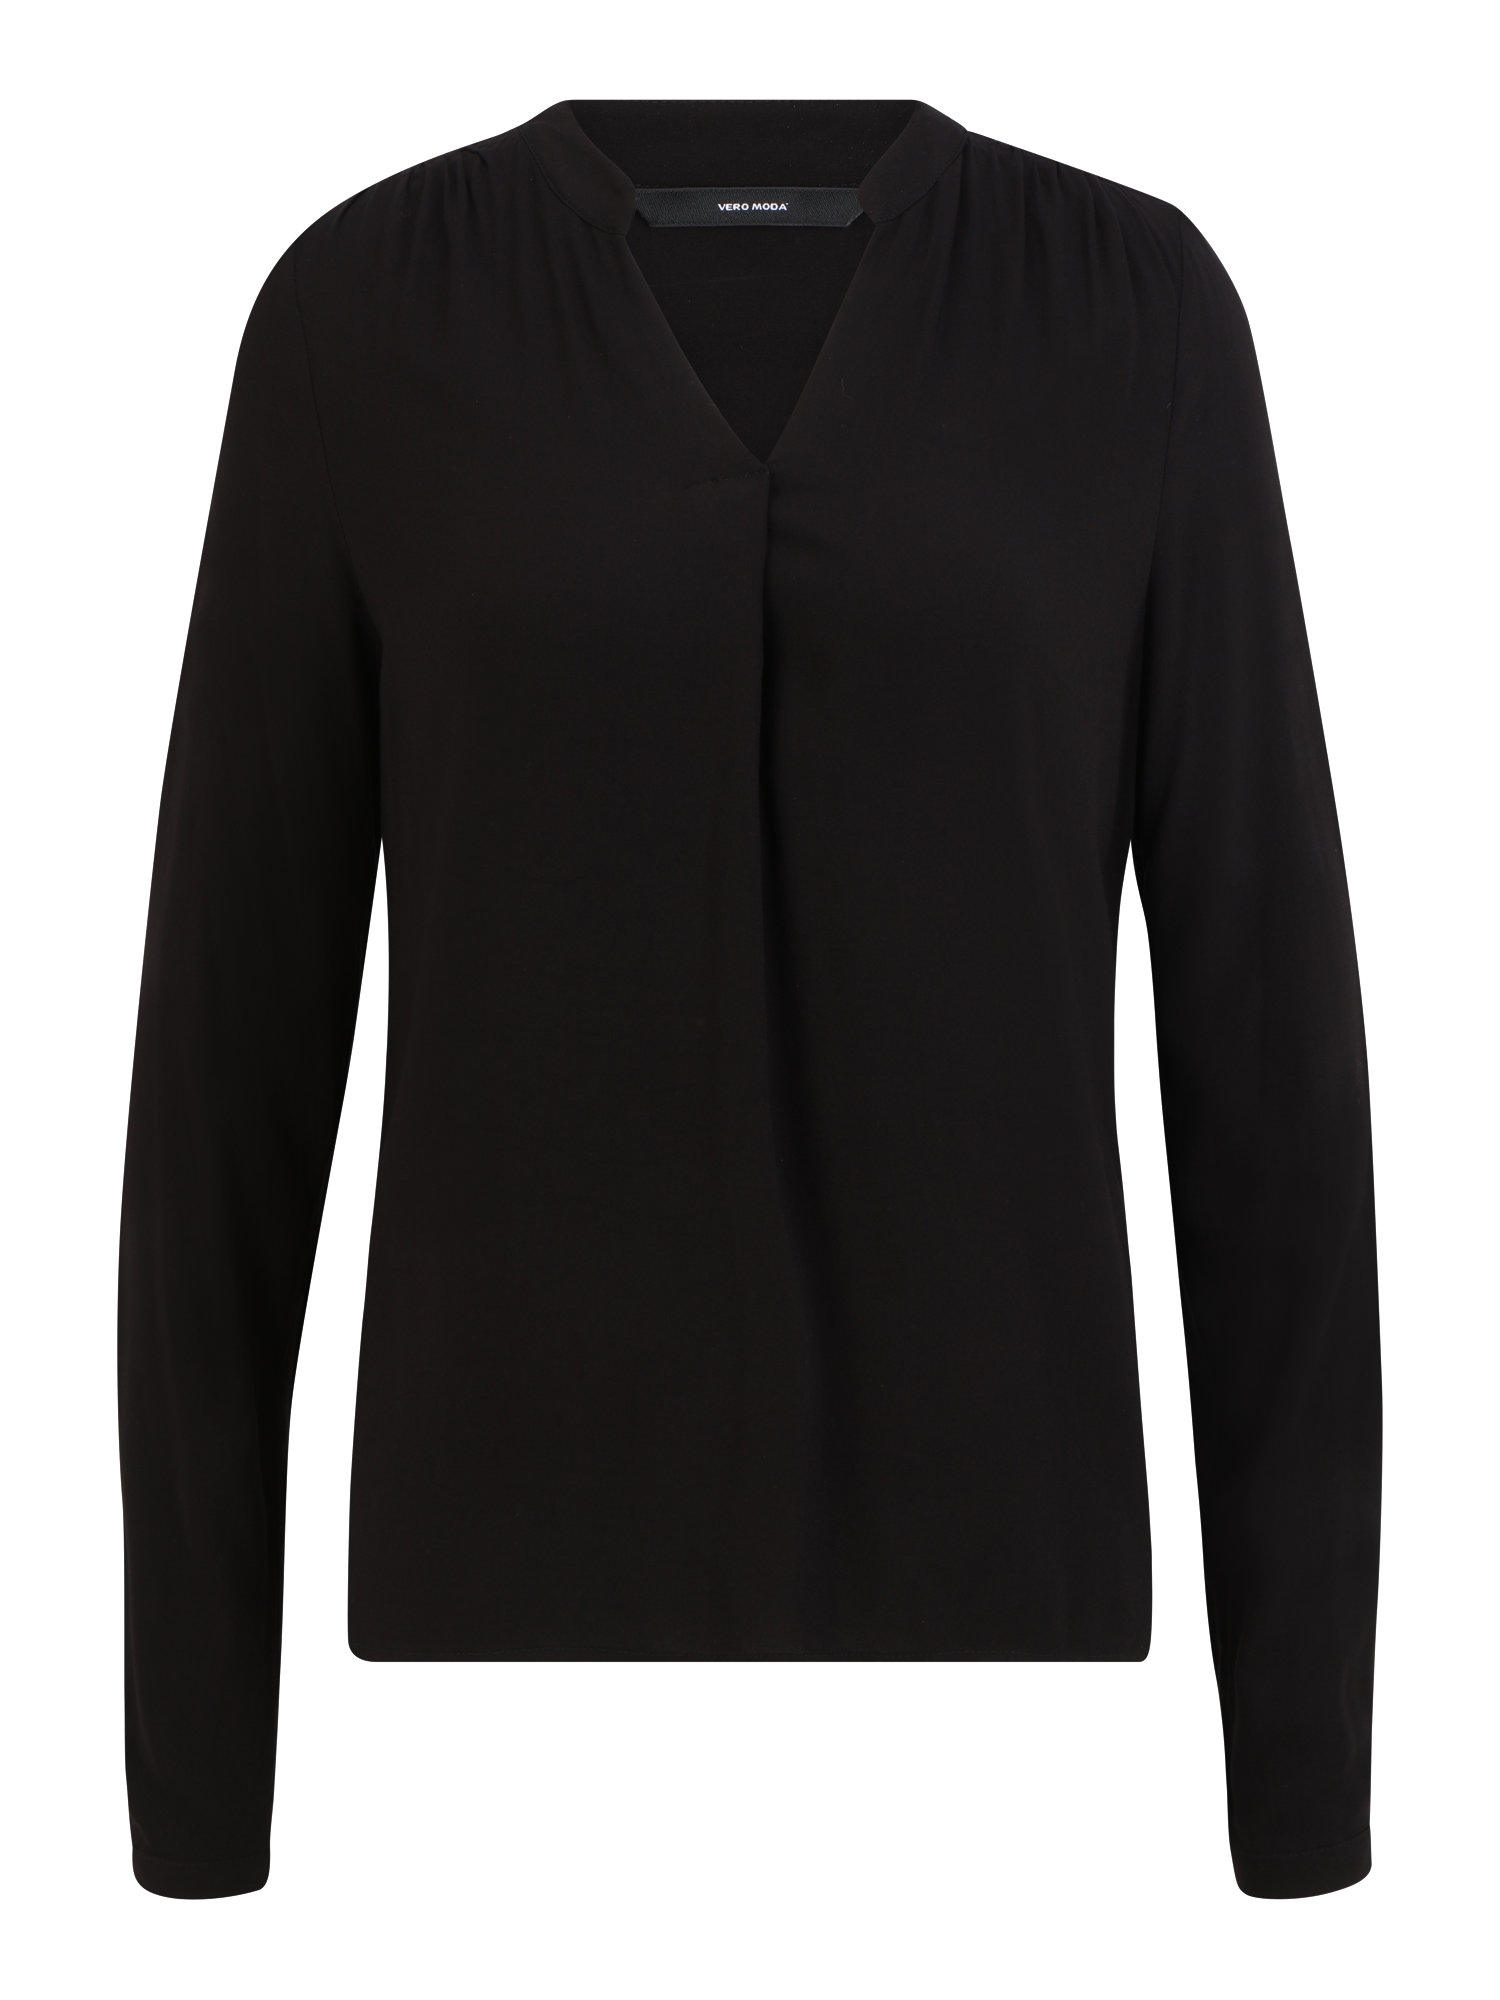 Odzież Kobiety Vero Moda Tall Bluzka NADS ROME w kolorze Czarnym 